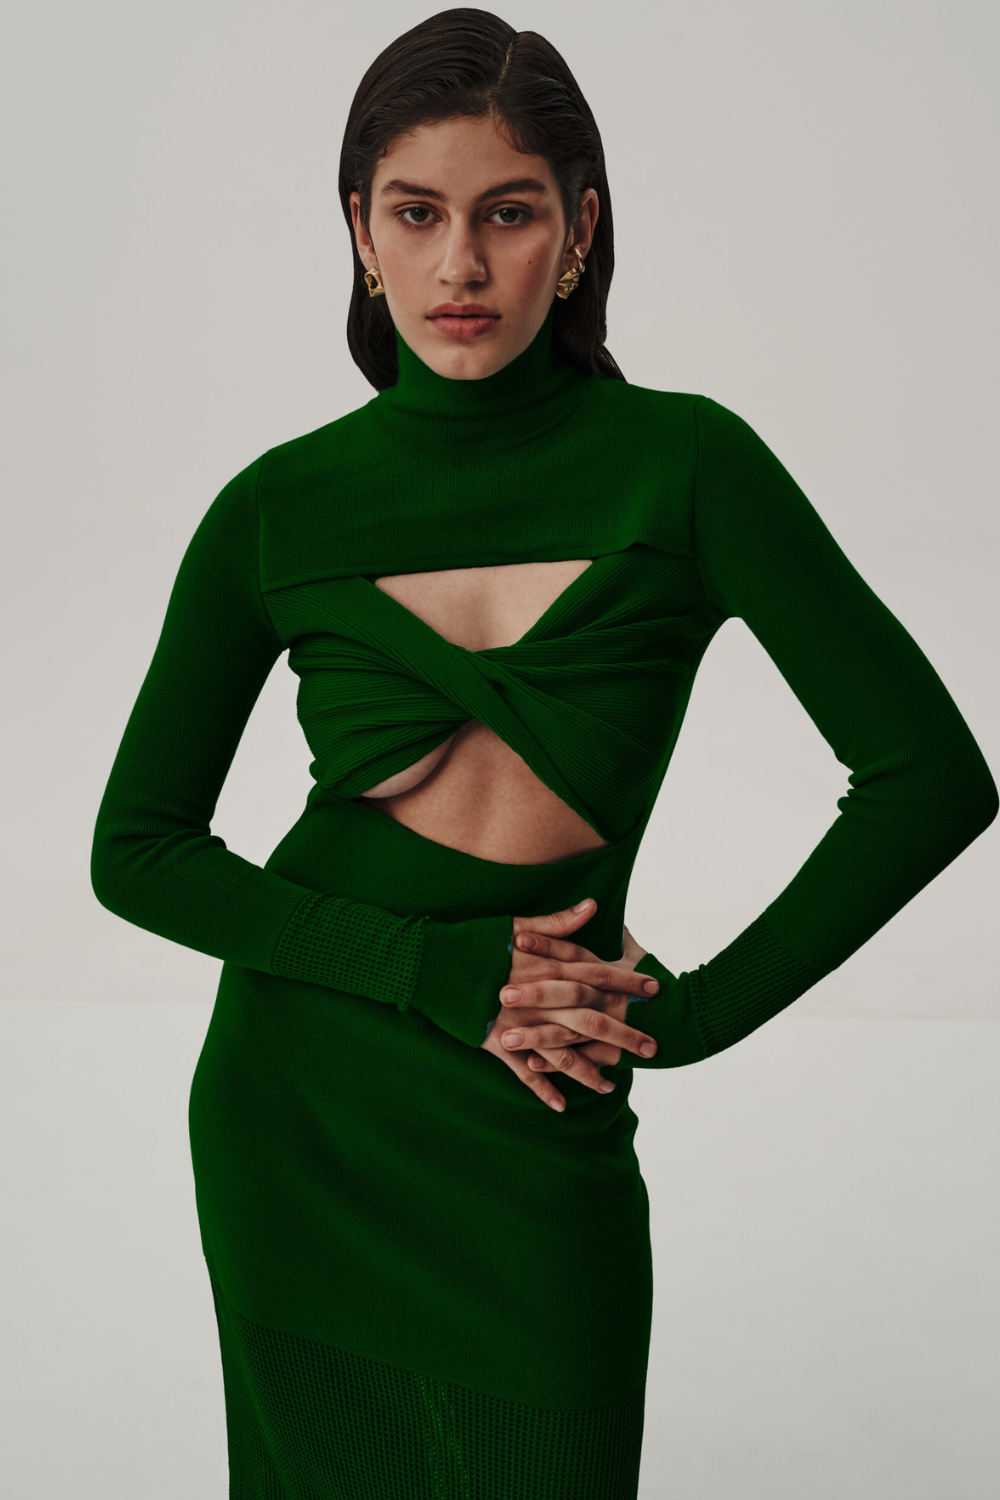 Šaty trikotážní s topem, zelené (T.Mosca) PEV23-01